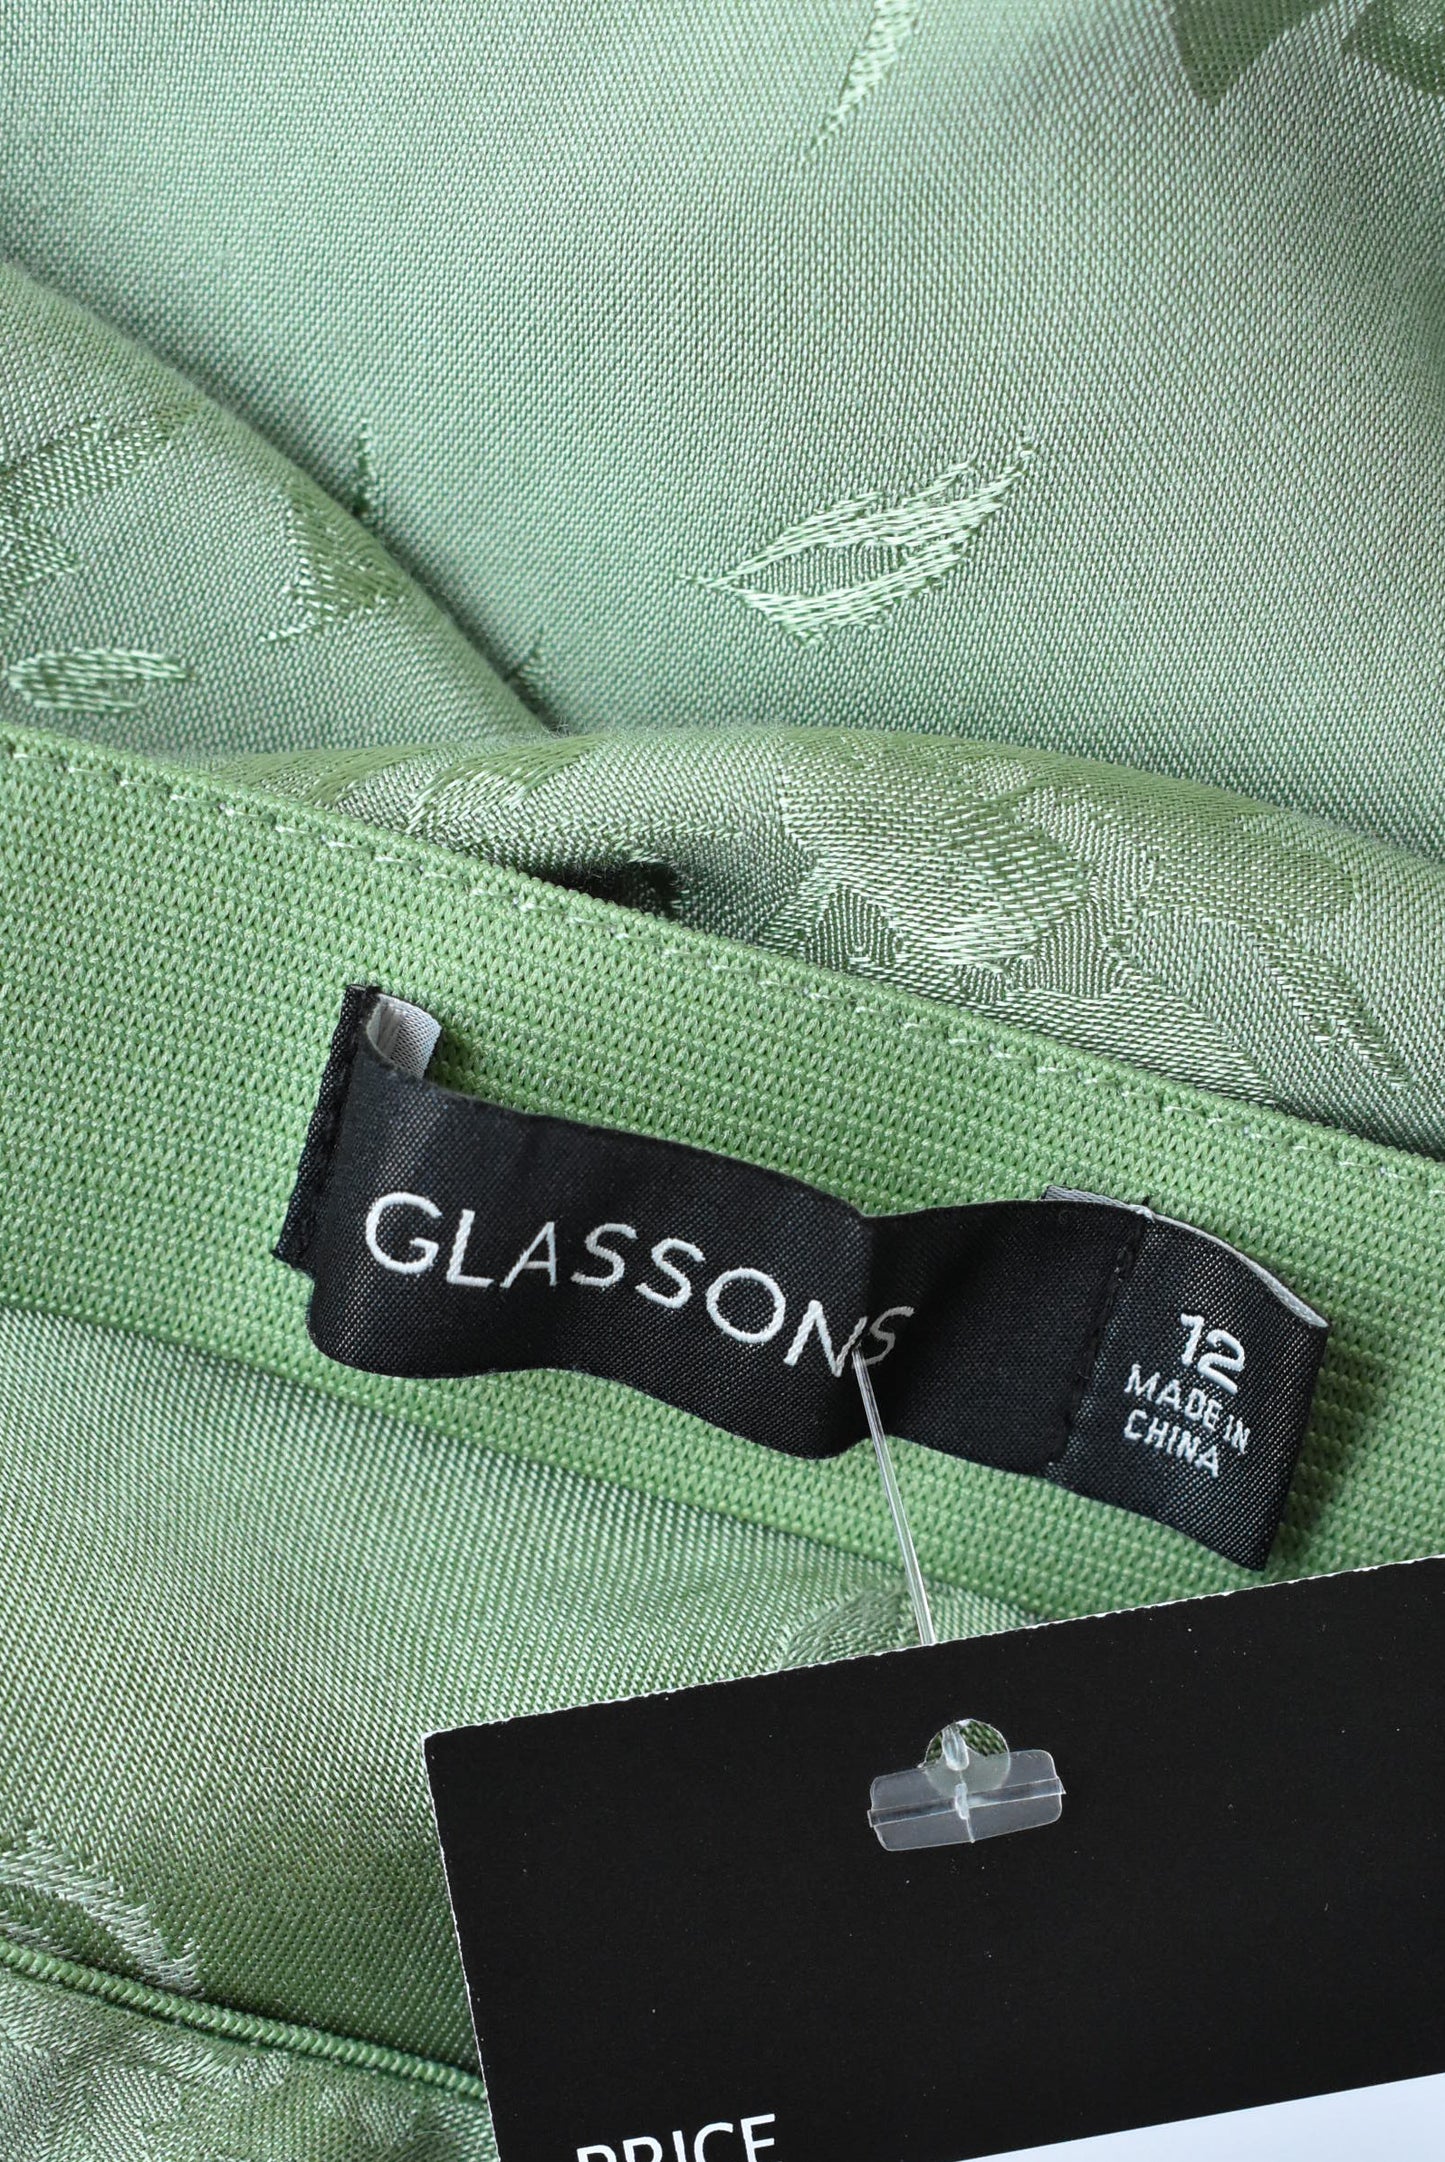 Glassons green mermaid skirt, size 12